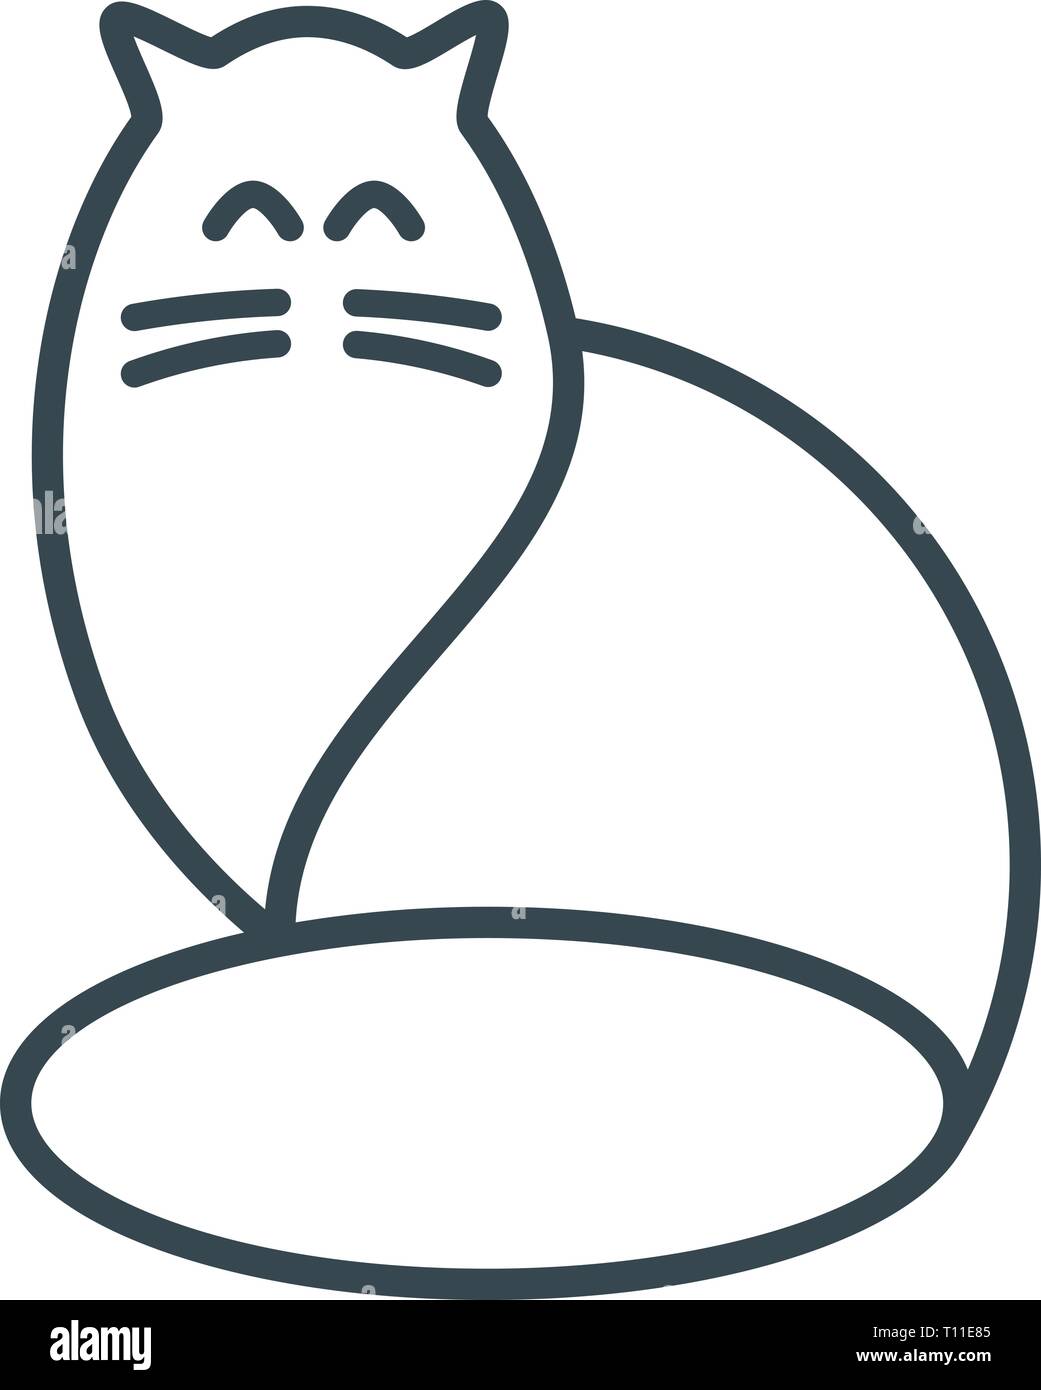 Semplice gatto stilizzato di cerchi geometrici e linee. Logo astratto  Immagine e Vettoriale - Alamy